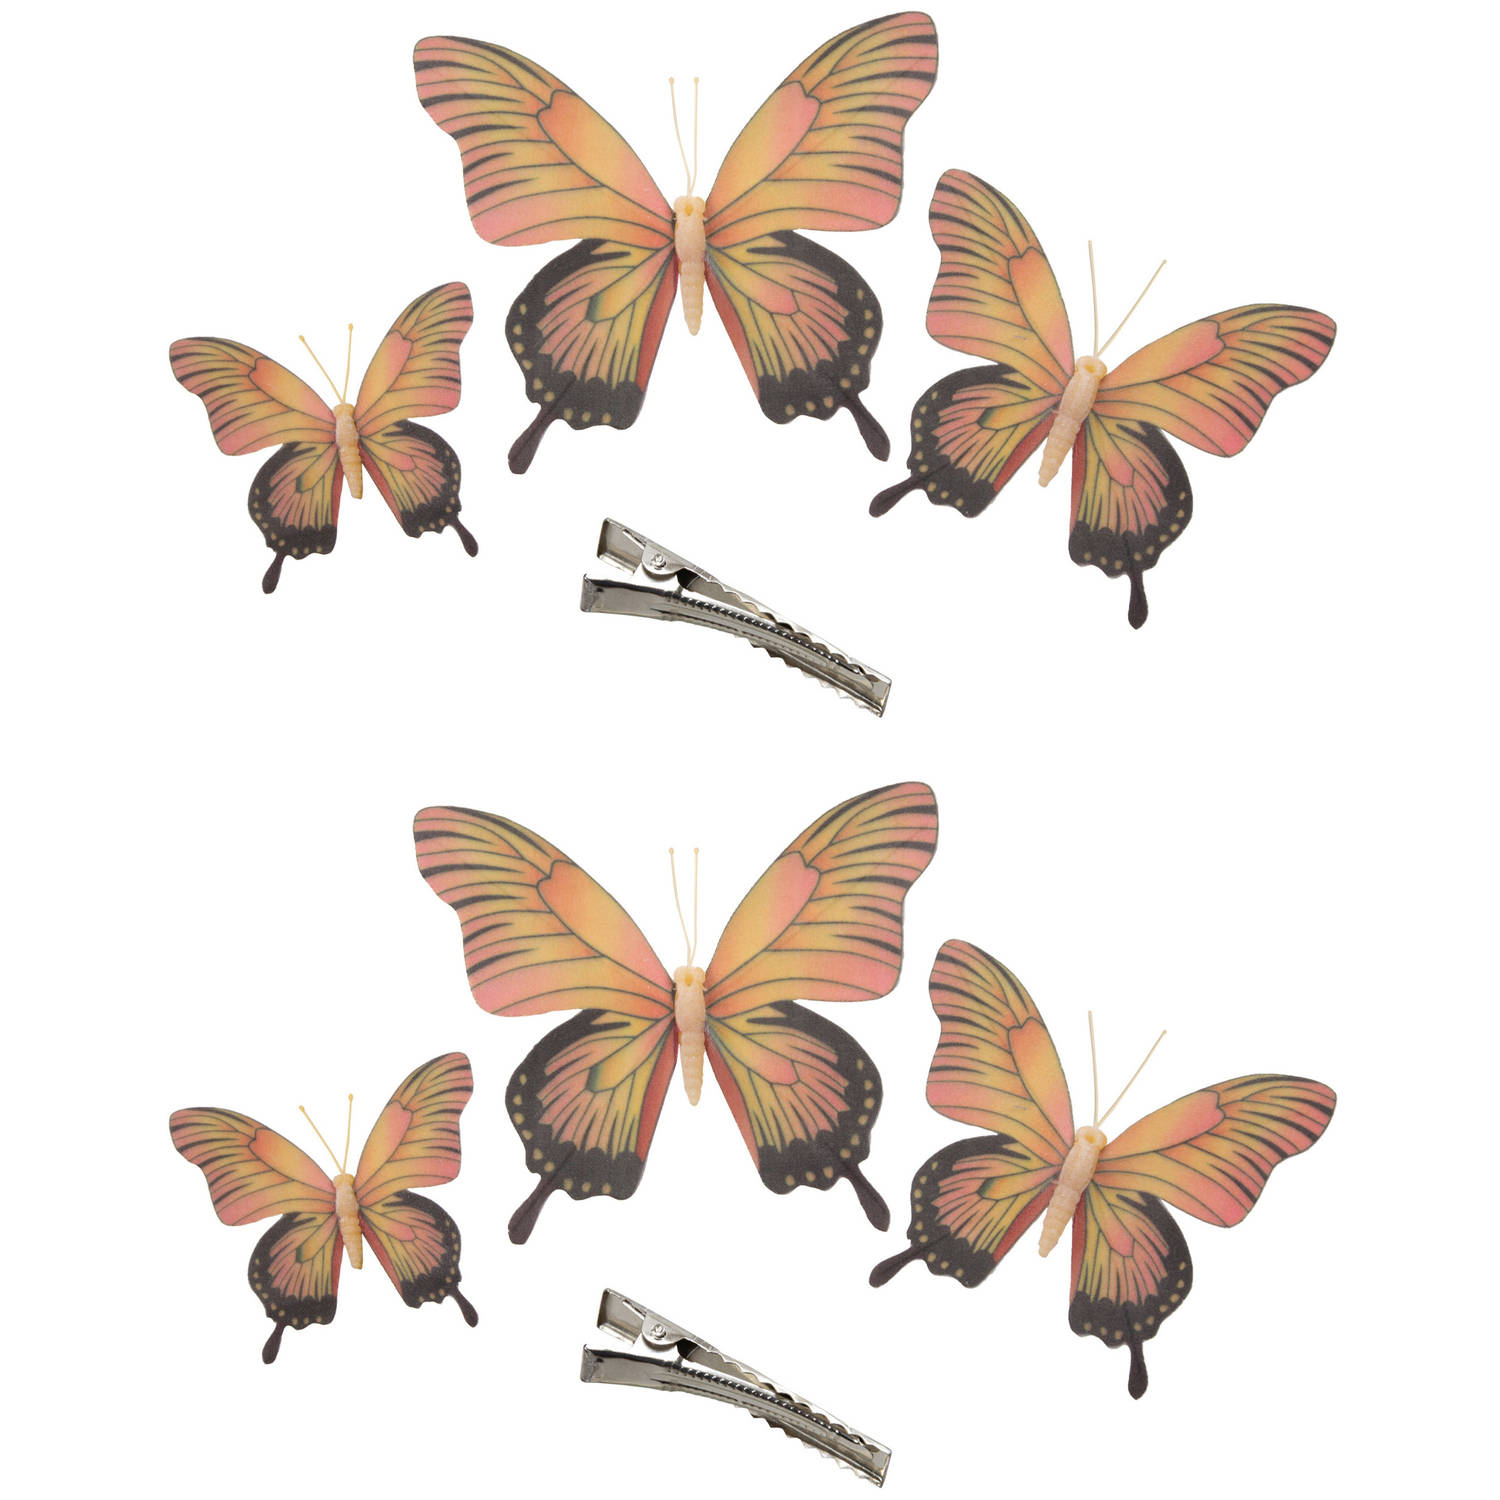 6x Stuks Decoratie Vlinders Op Clip Geel-roze 3 Formaten 12-16-20 Cm Hobbydecoratieobject